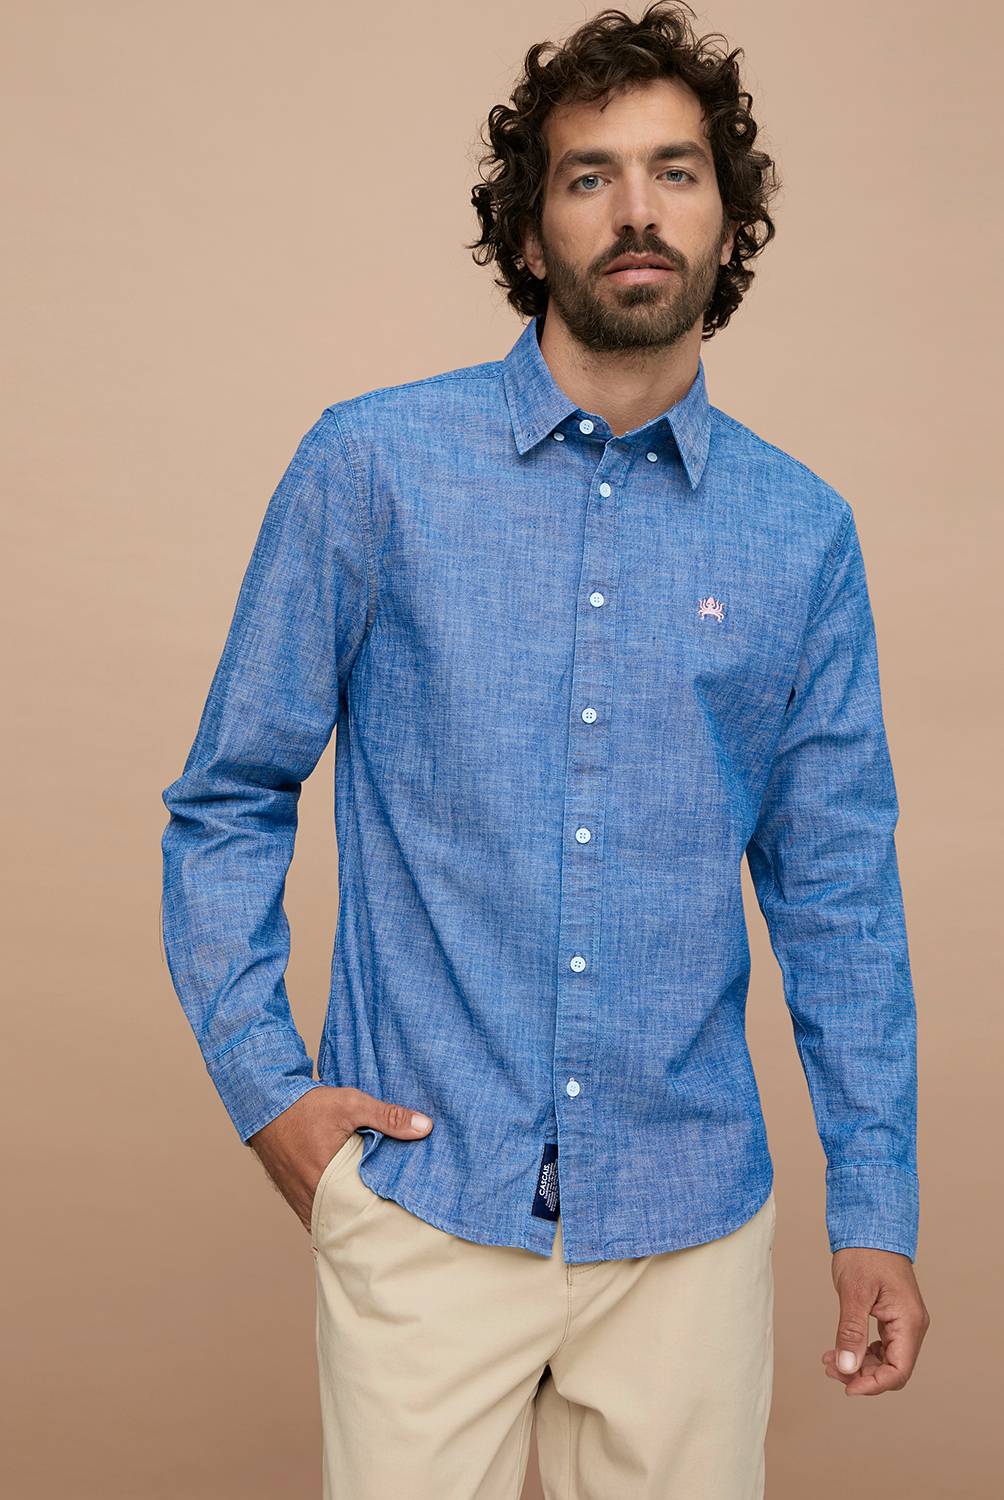 CASCAIS - Camisa de jean para Hombre Slim Cascais.